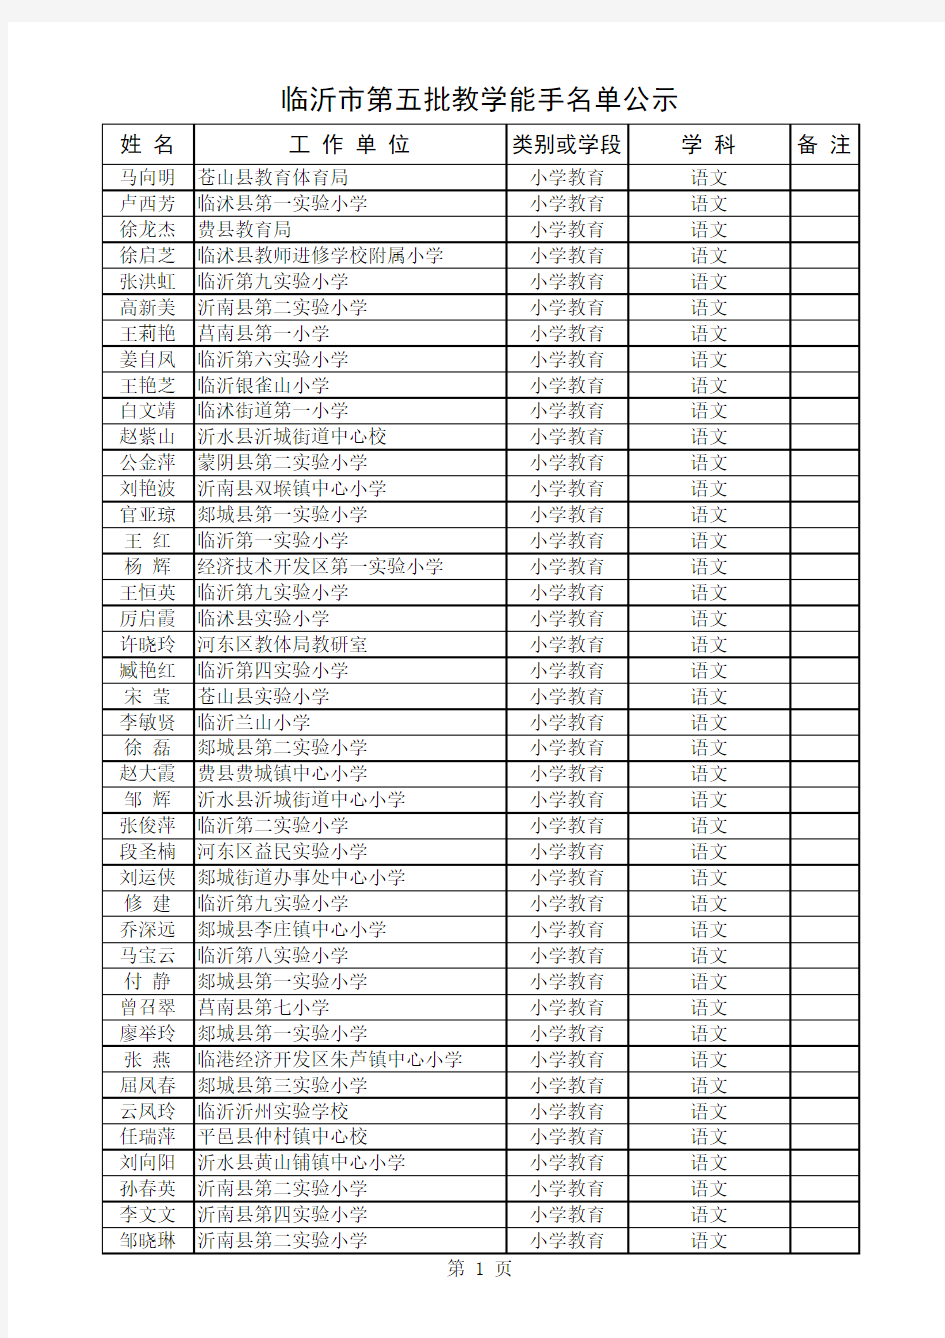 临沂市第五批教学能手名单公示2013.1